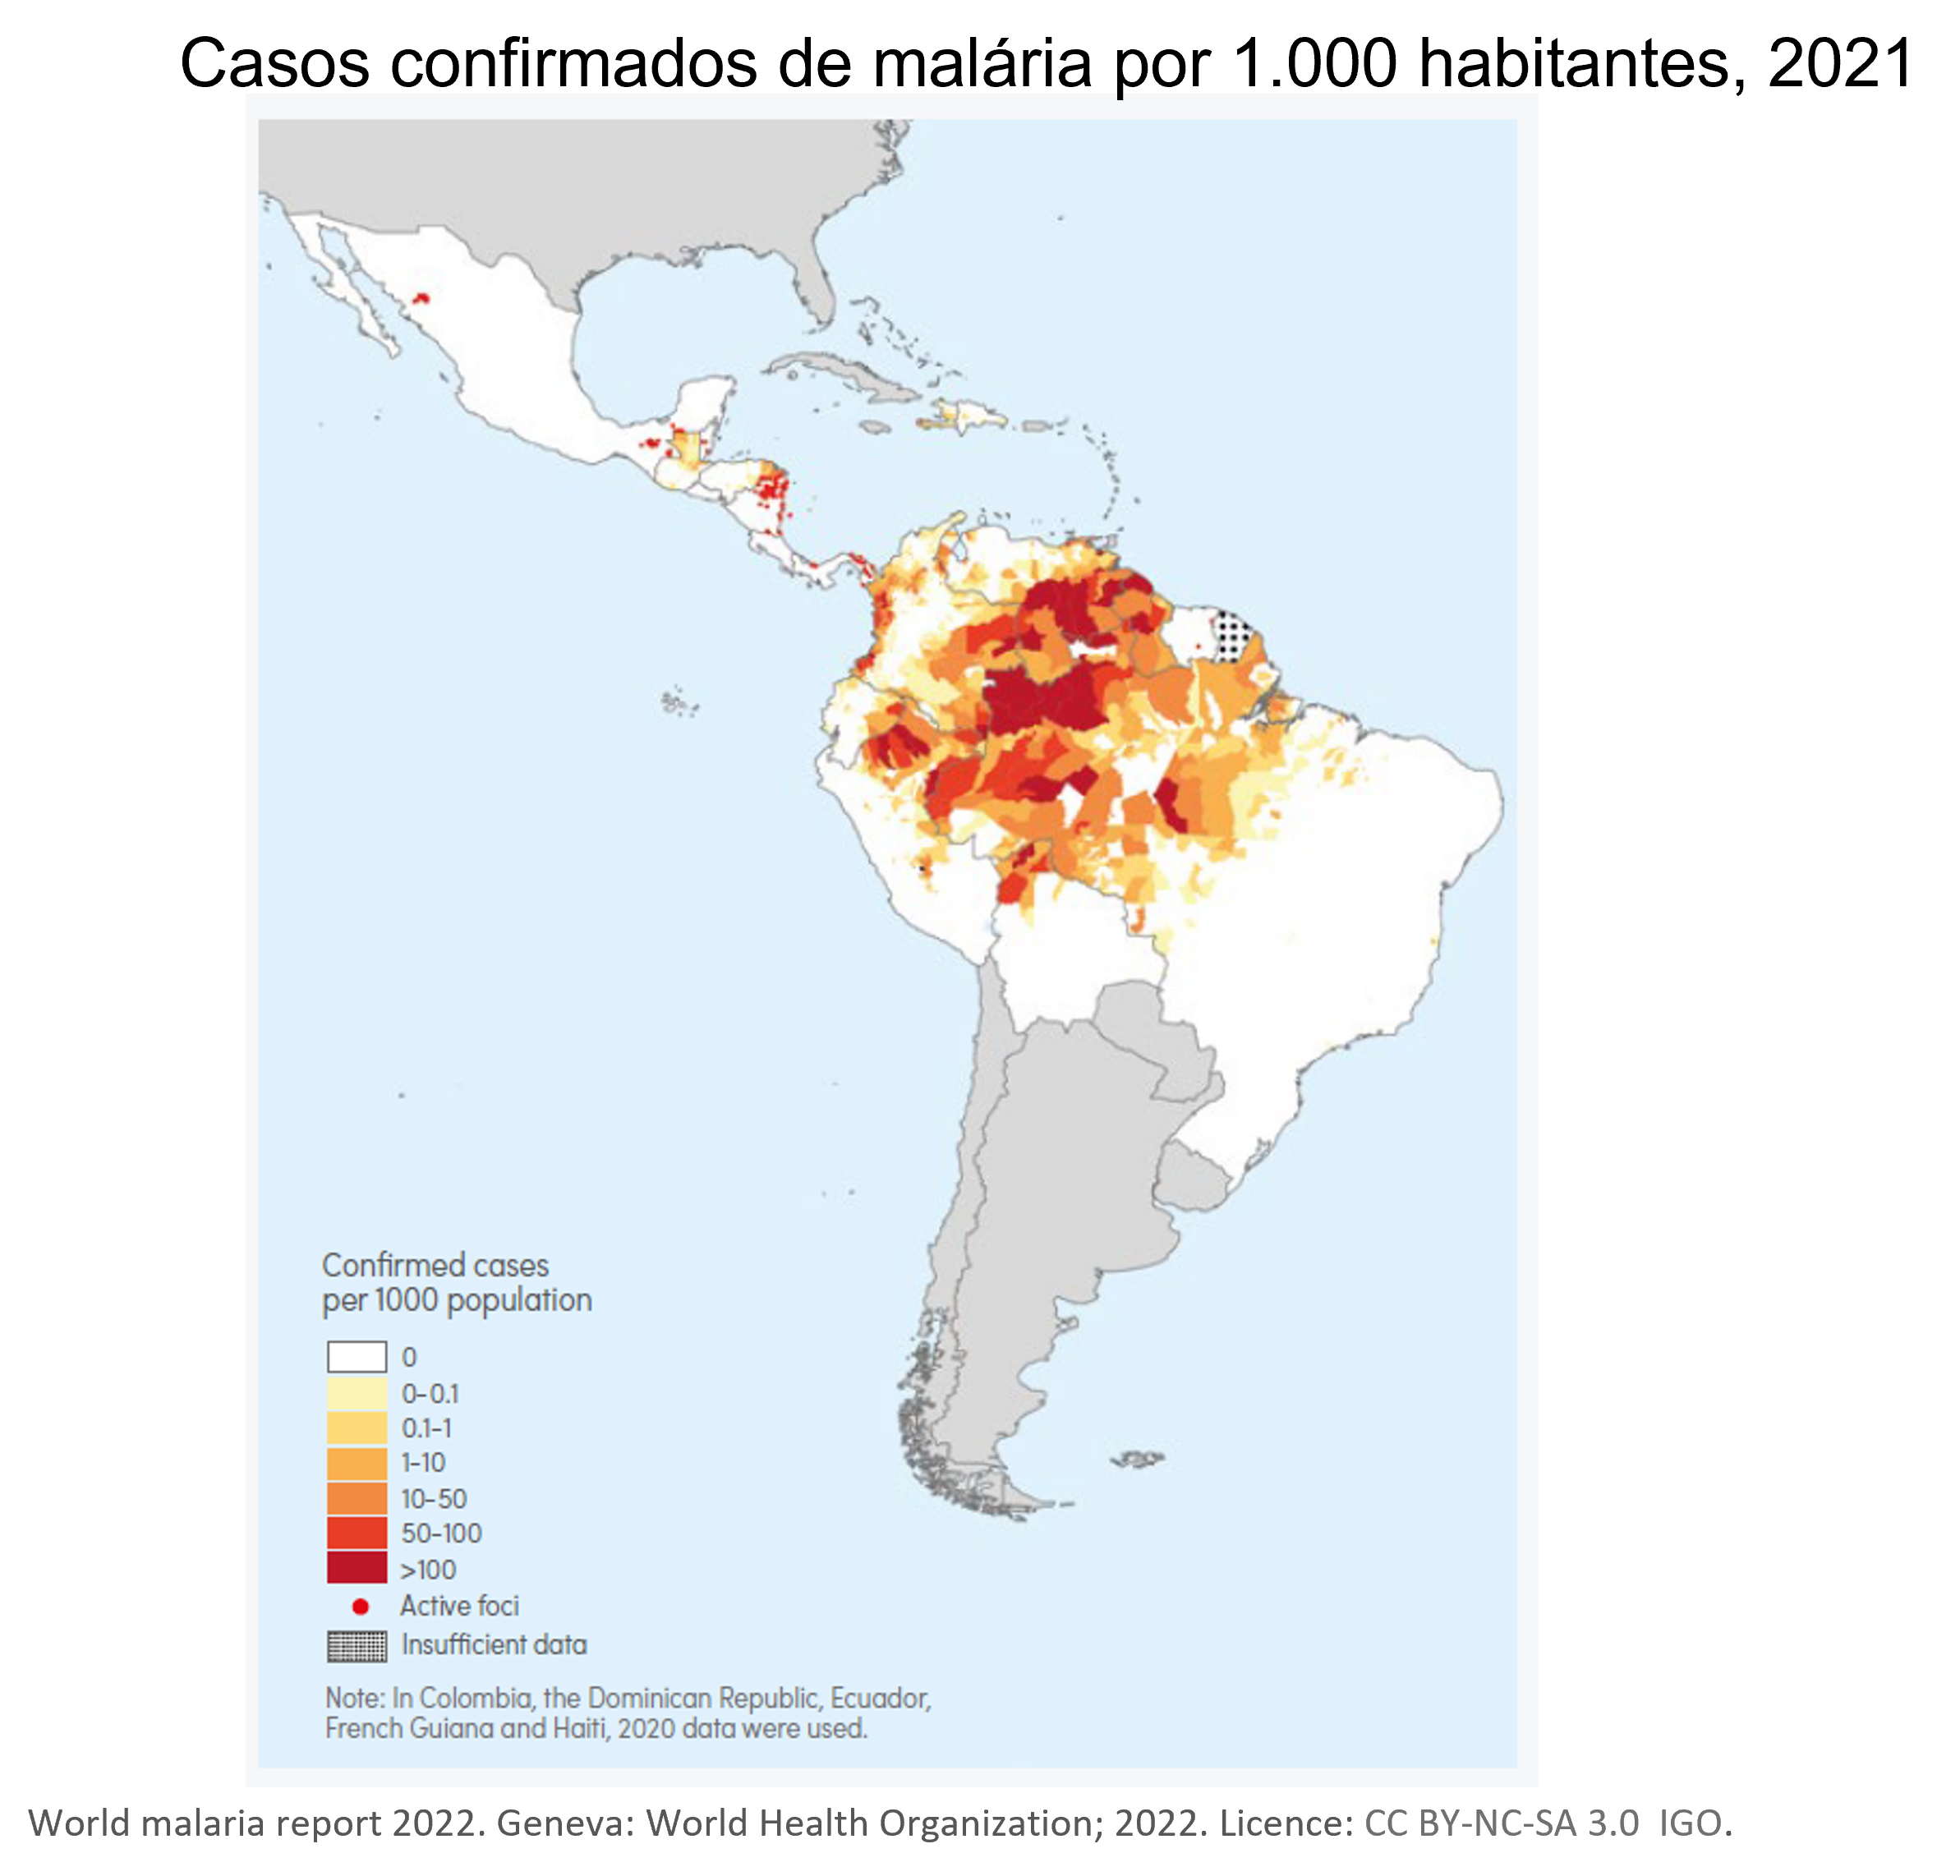 Relatório Mundial da Malária: Mapa da Região das Américas (Full)